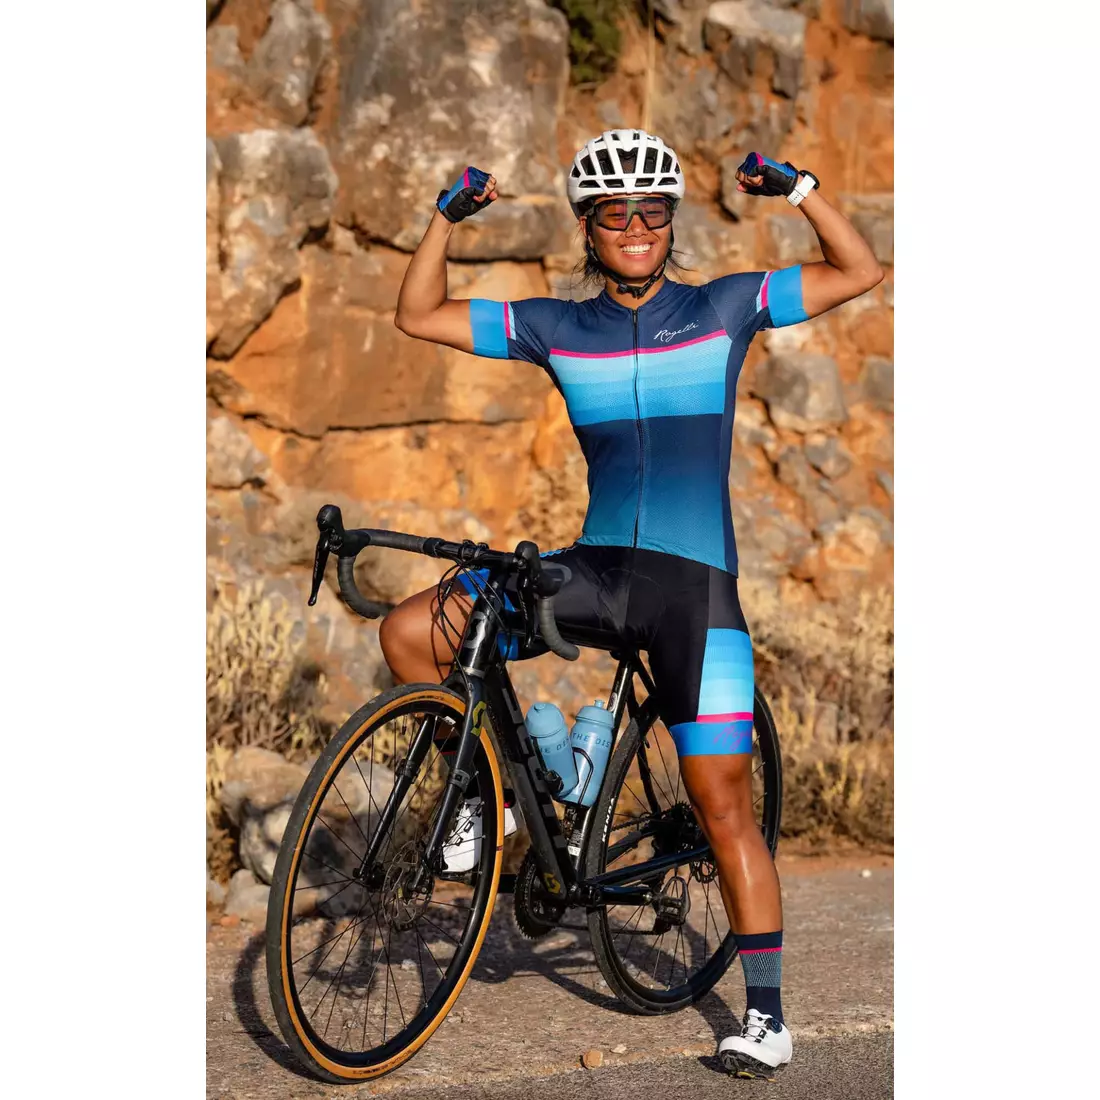 Rogelli IMPRESS II női kerékpáros mez, kék-rózsaszín